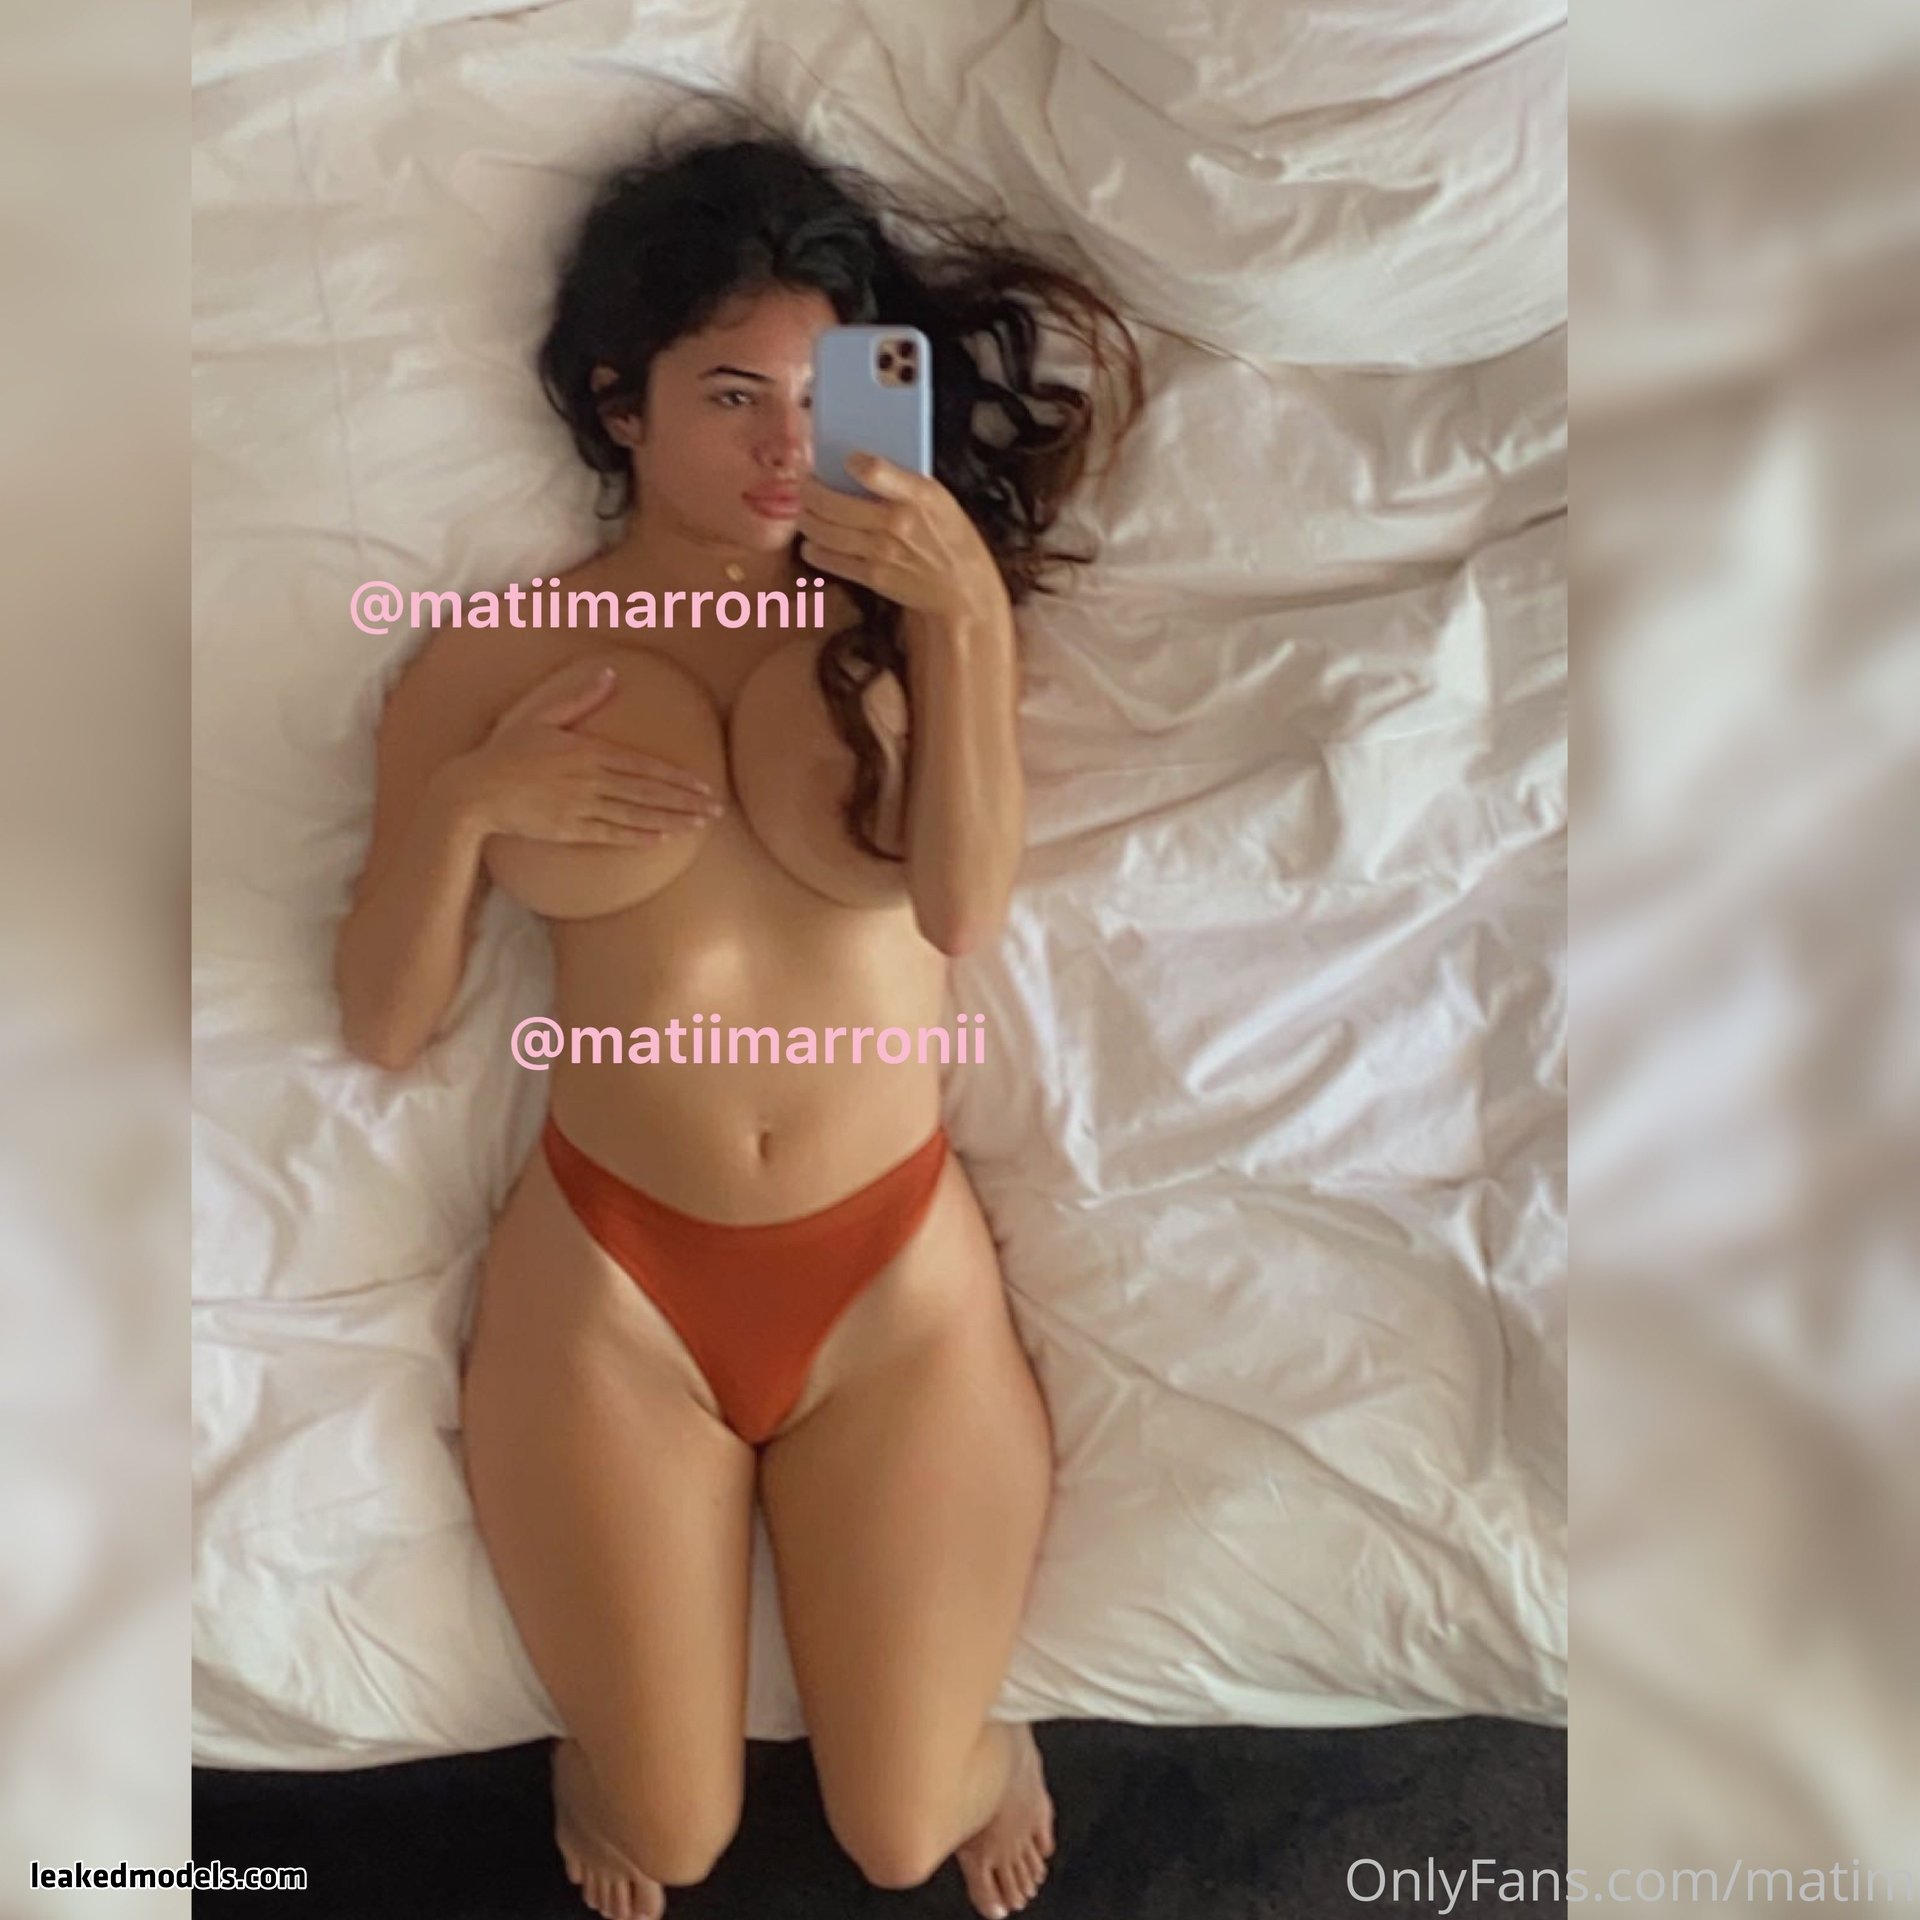 matildem nude leaks leakedmodels.com 007 - Matildem Naked (23 Photos + 3 Videos)